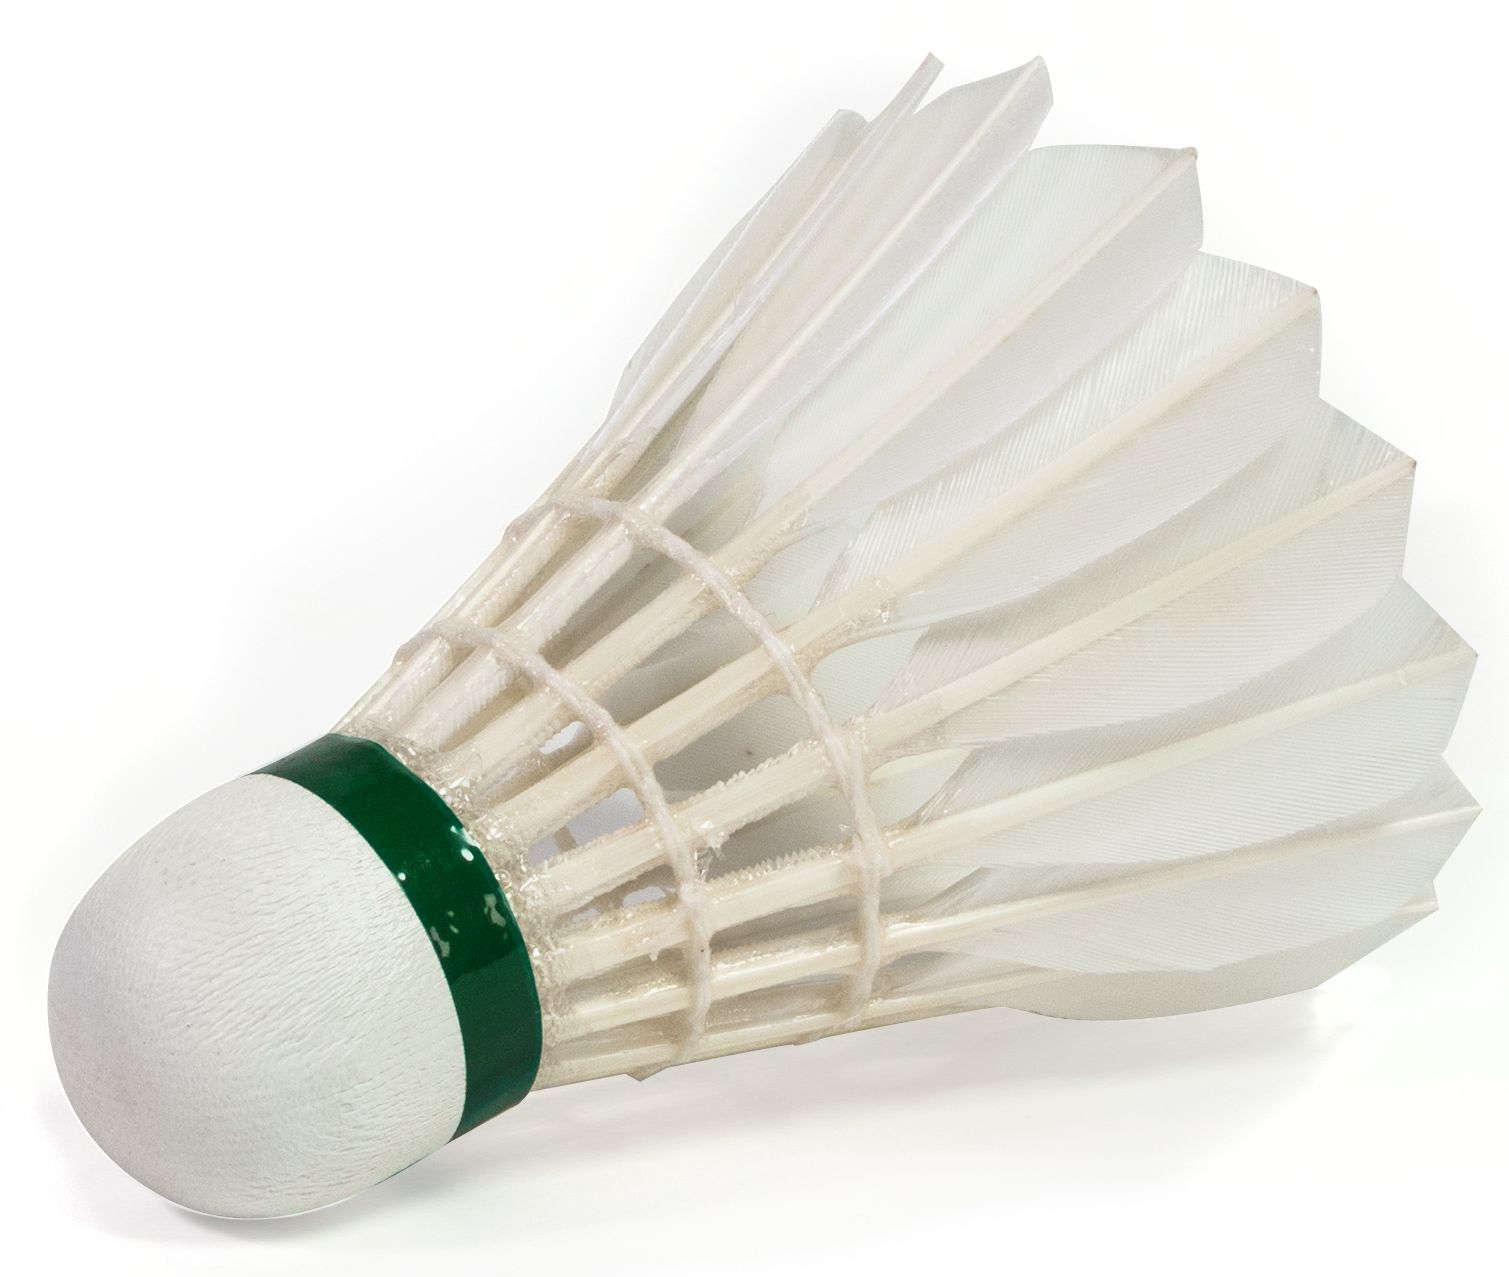 Badminton shuttlecocks